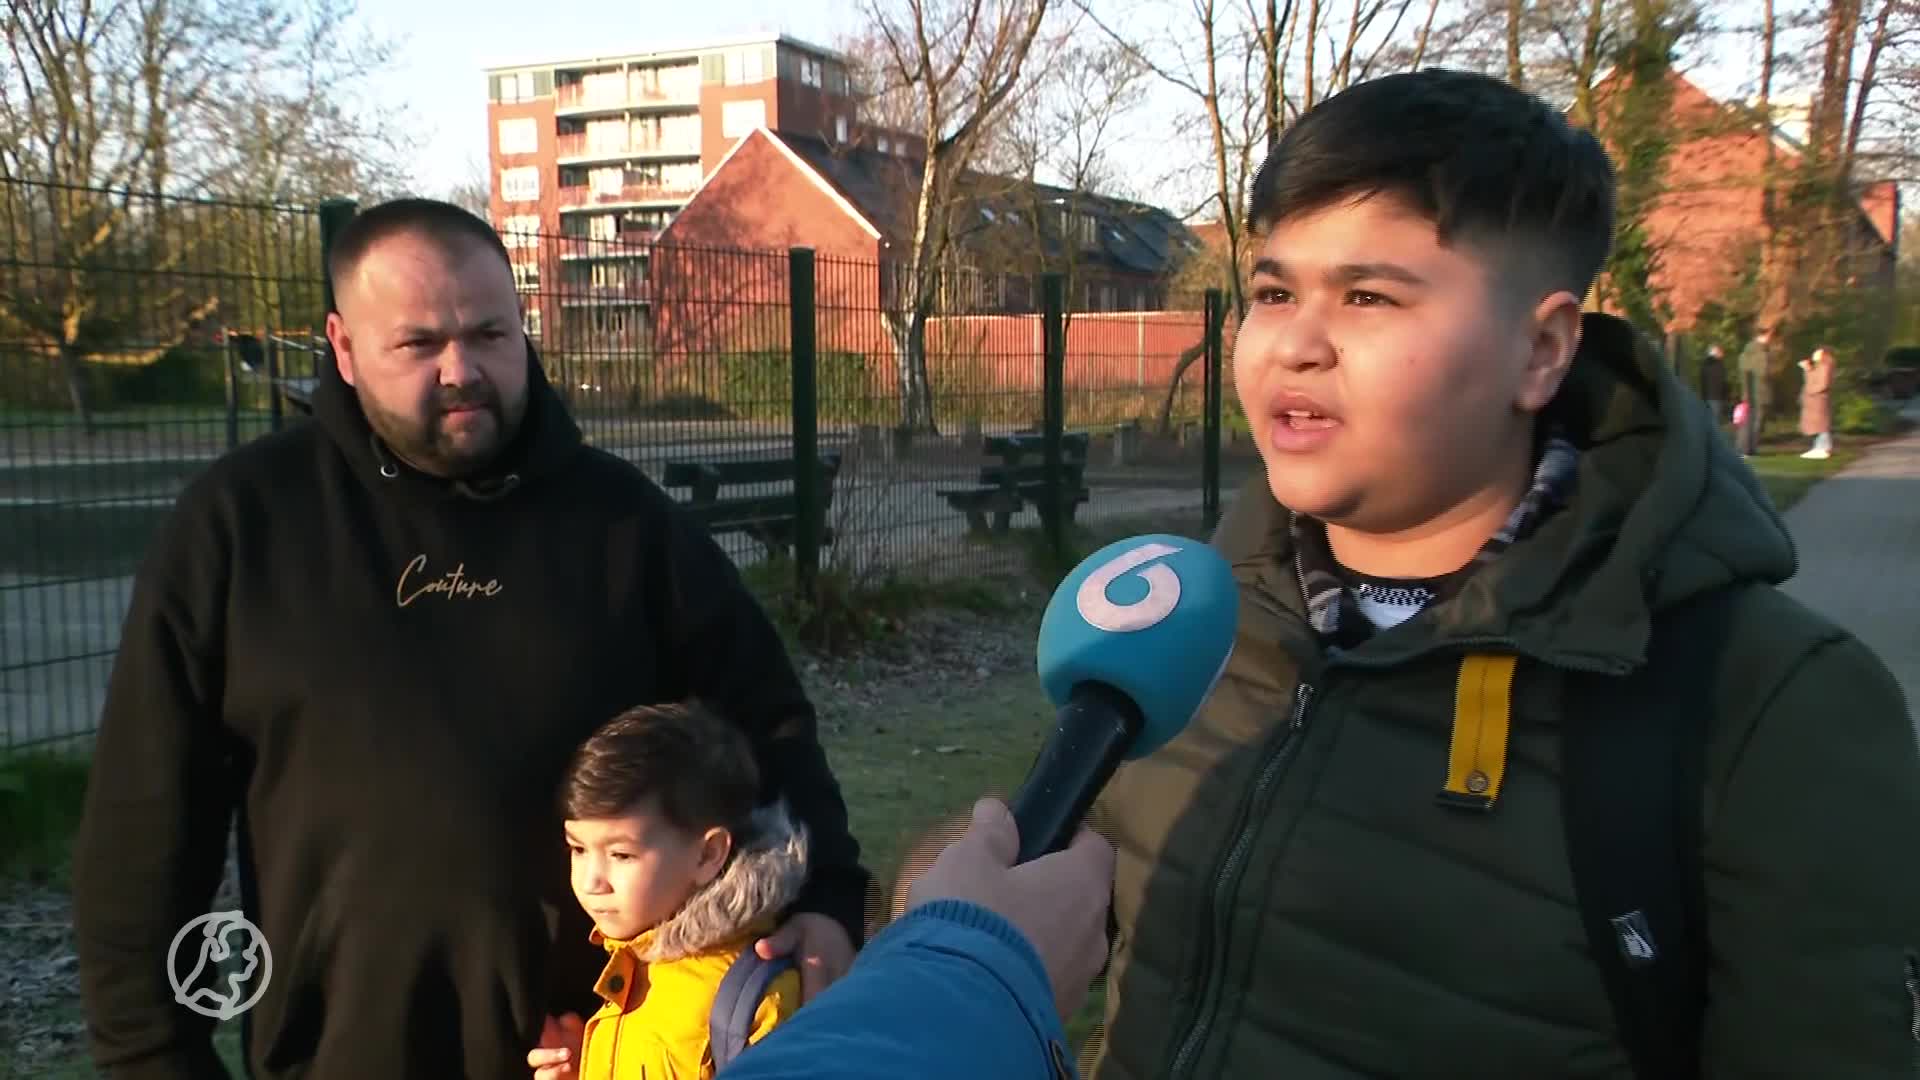 Zaandamse school weer open na doodsbedreiging: 'Voelt nog steeds niet veilig'